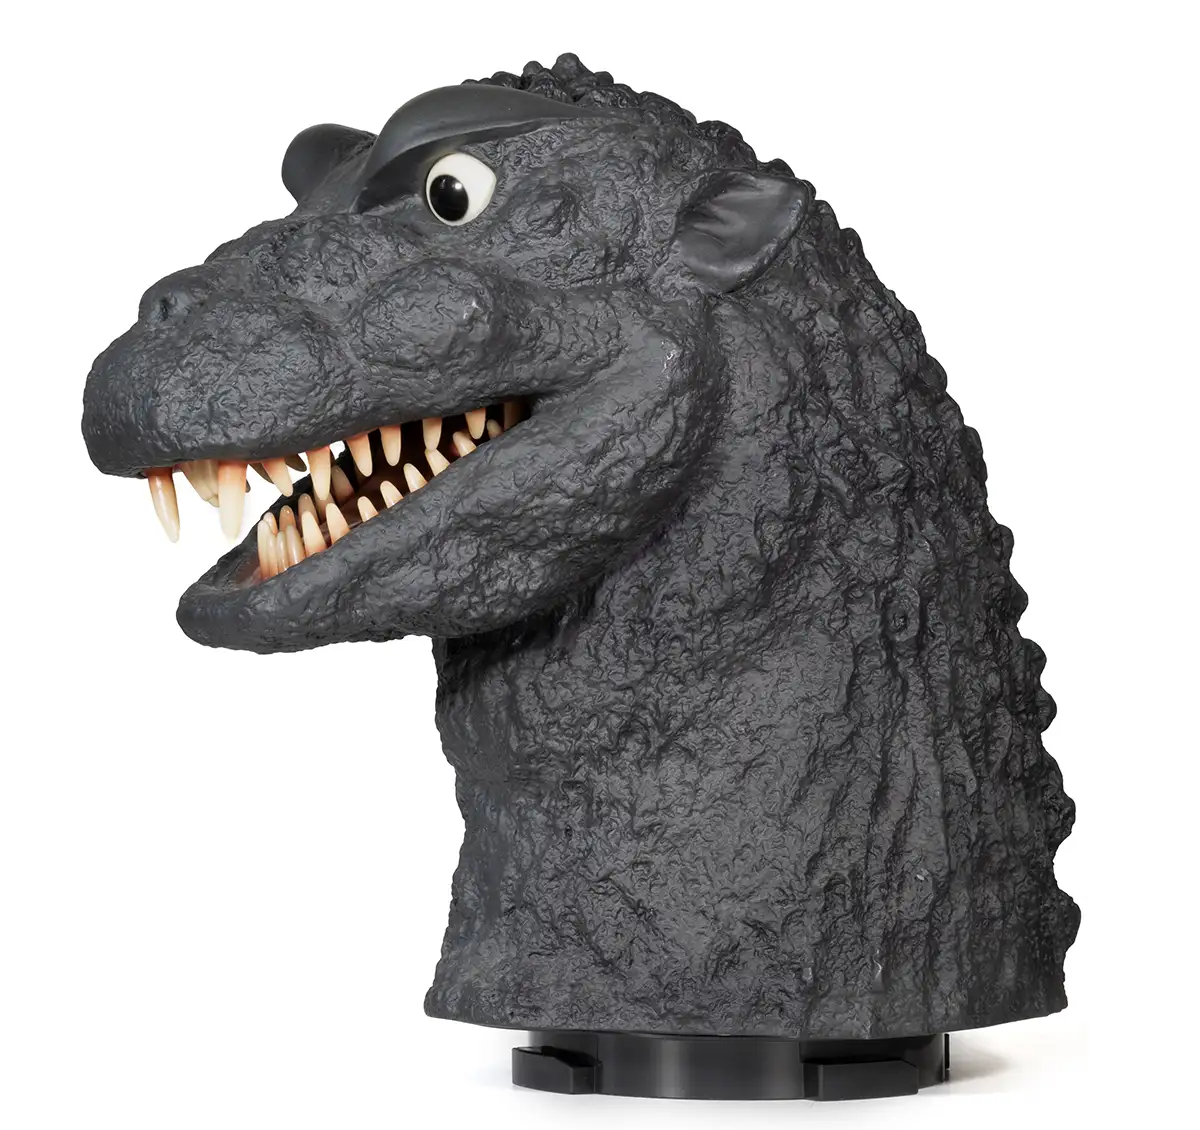 Godzilla Finał Box: Godzilla 1954 Head